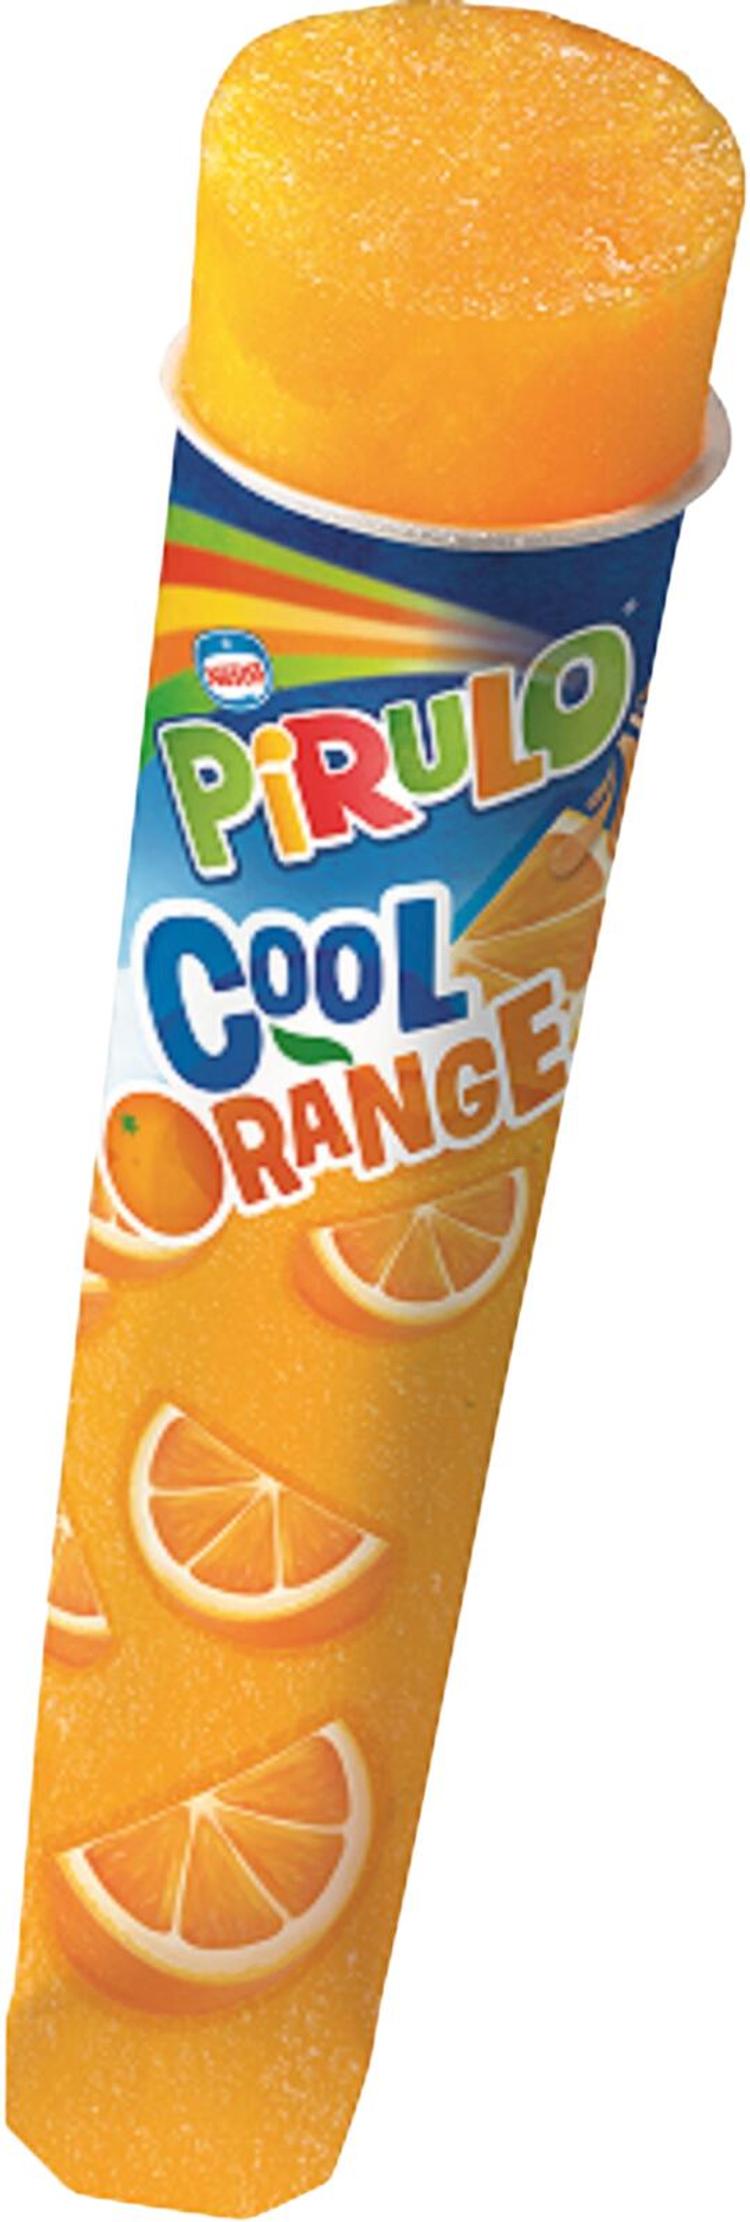 Pirulo Cool Orange limonadijää 100g/99ml